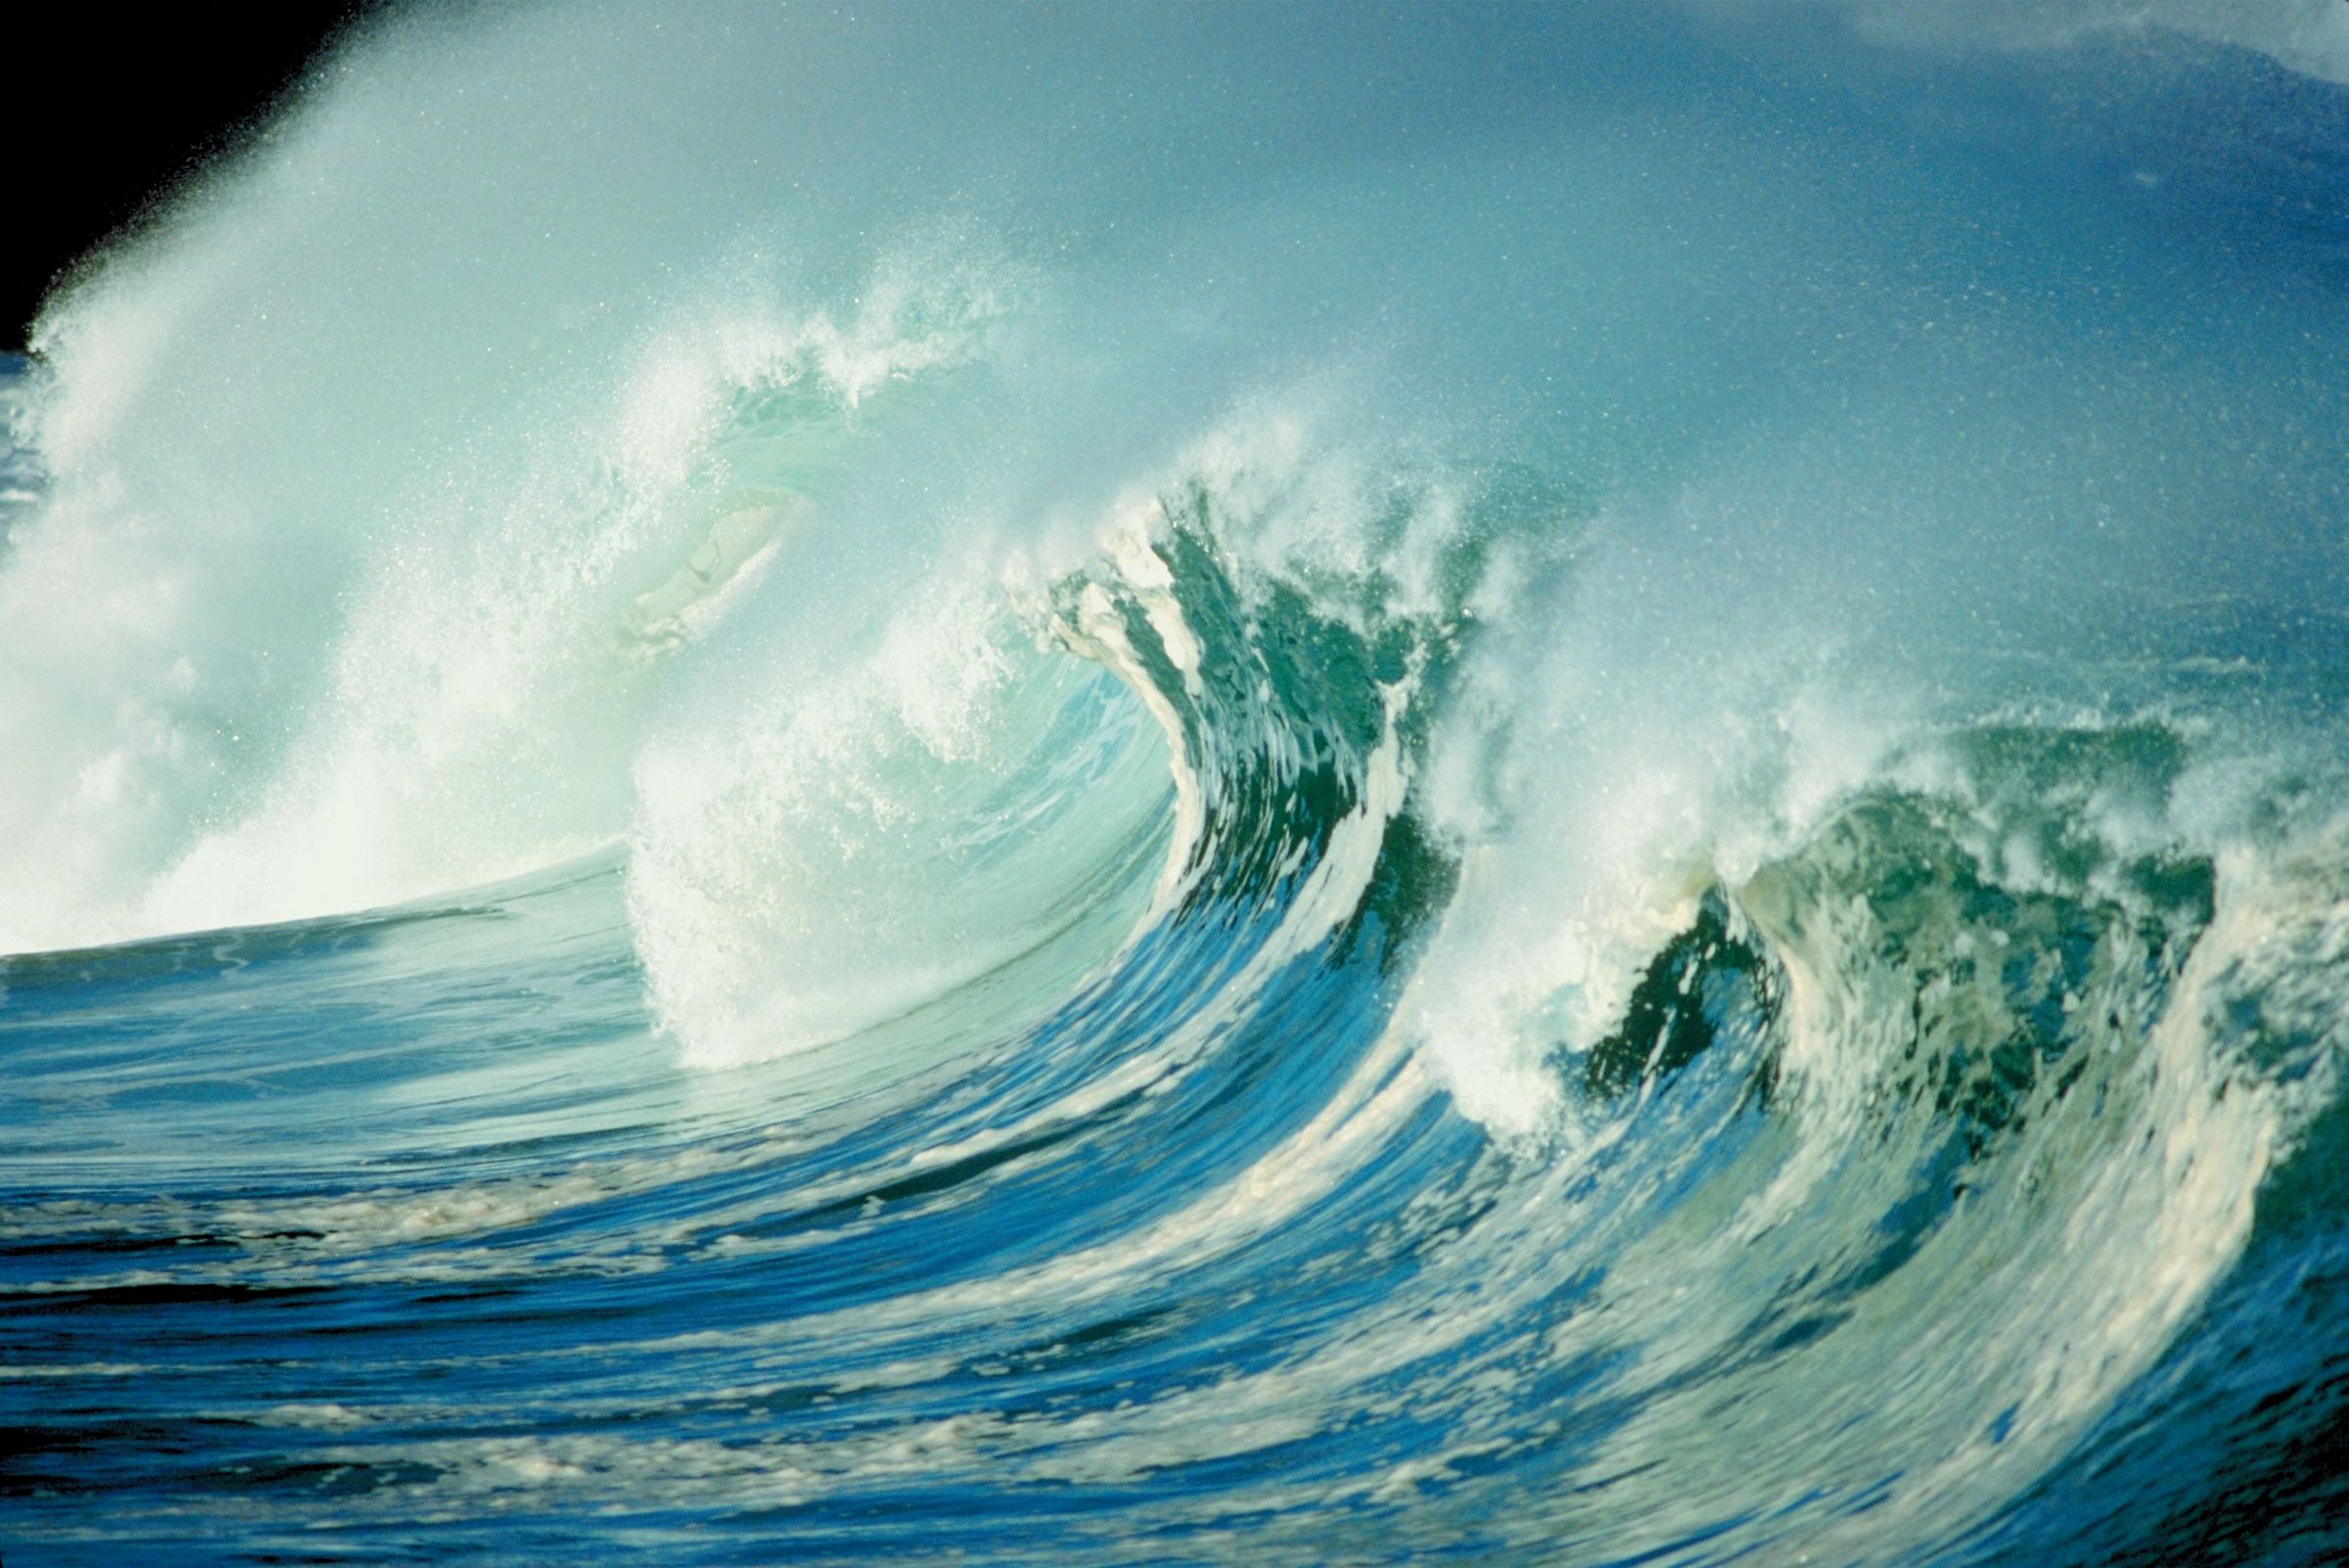 Wave, current and tidal - Mott MacDonald